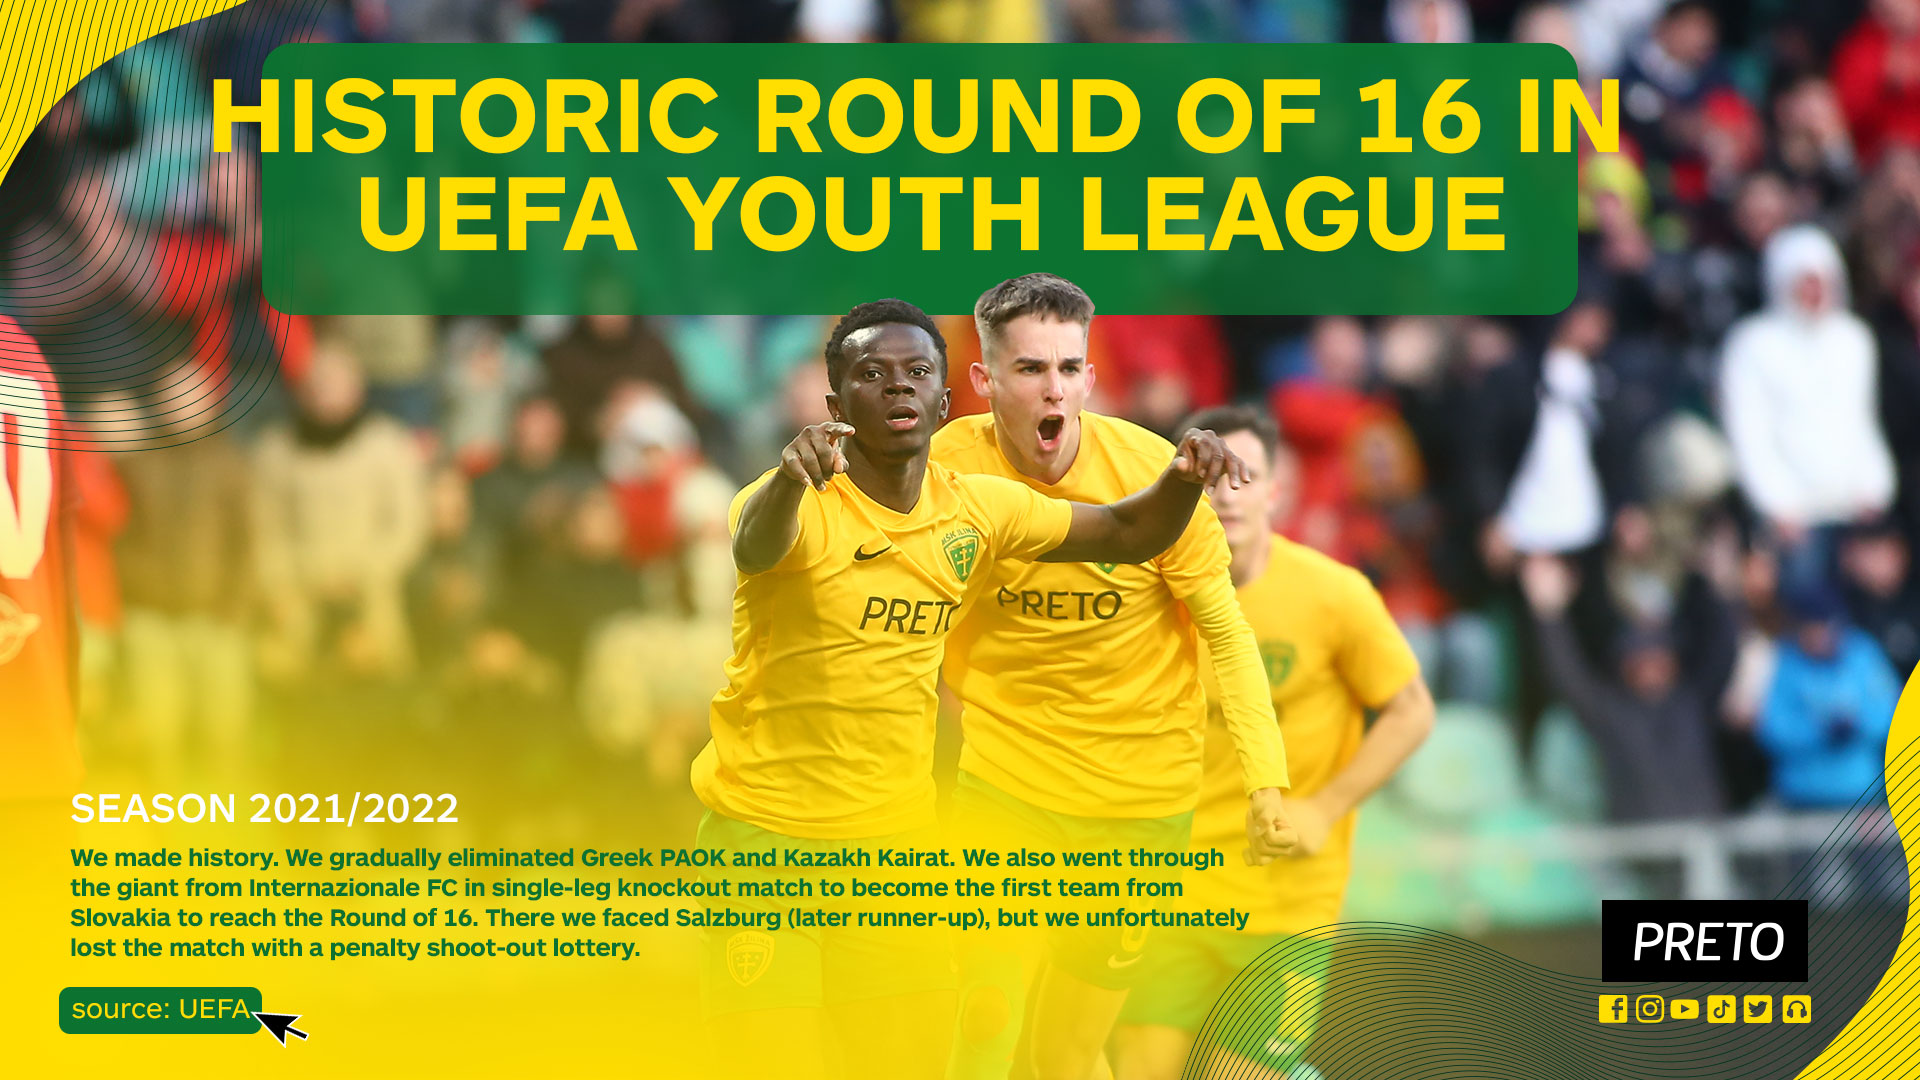 uefa youth league_round 16